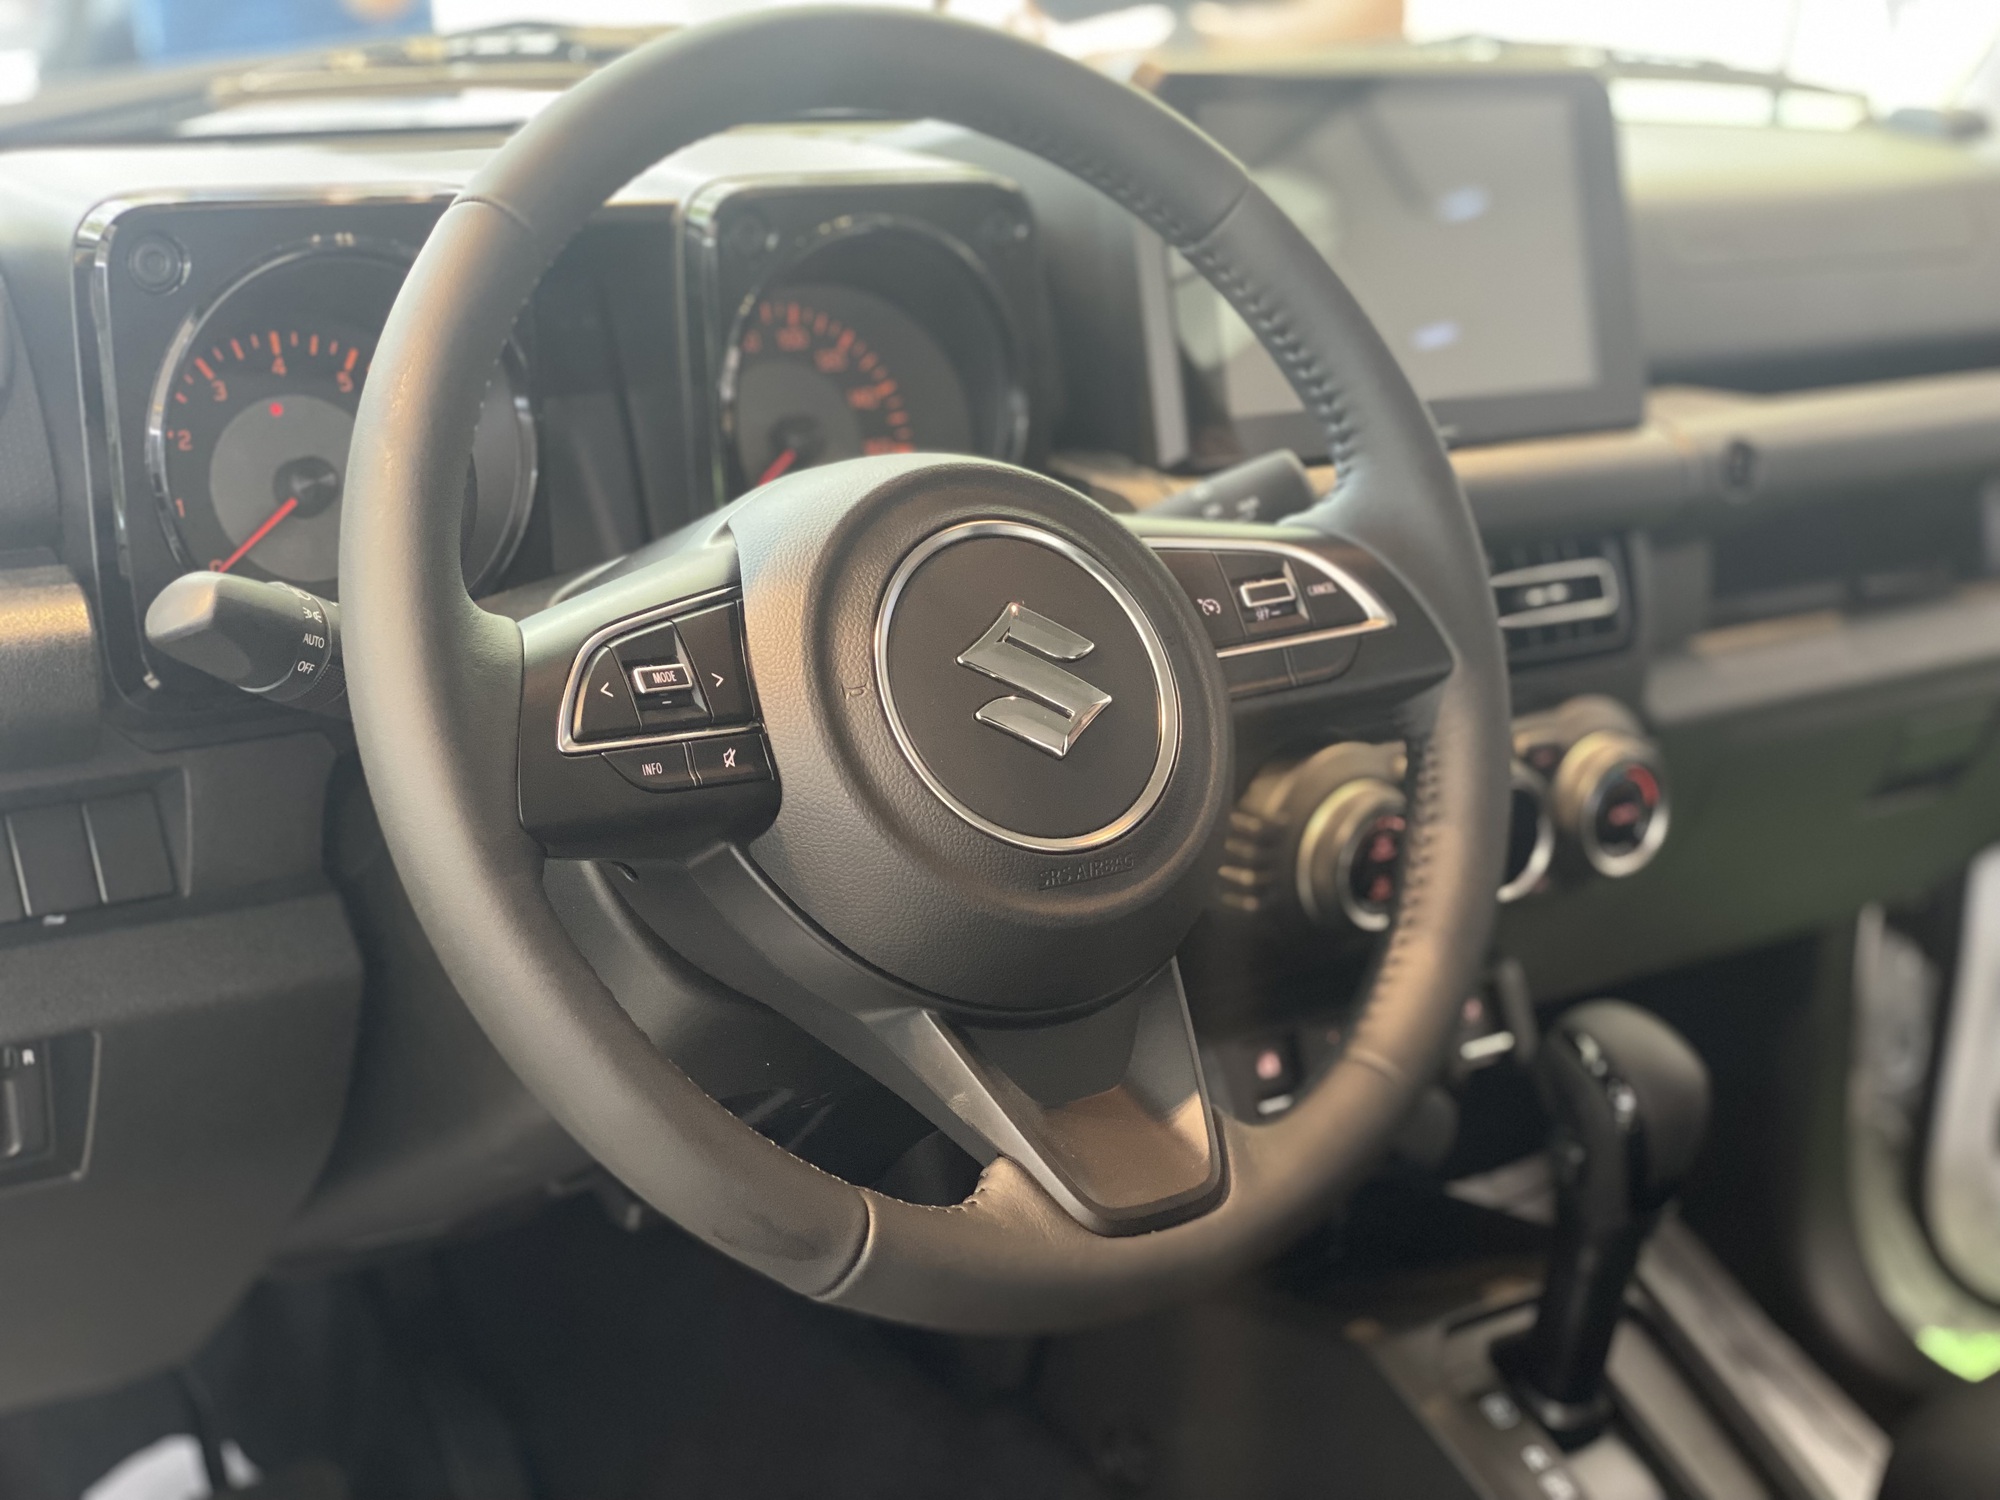 Nội thất Suzuki Jimny thiết kế đơn giản, tận dụng không gian bên trong xe